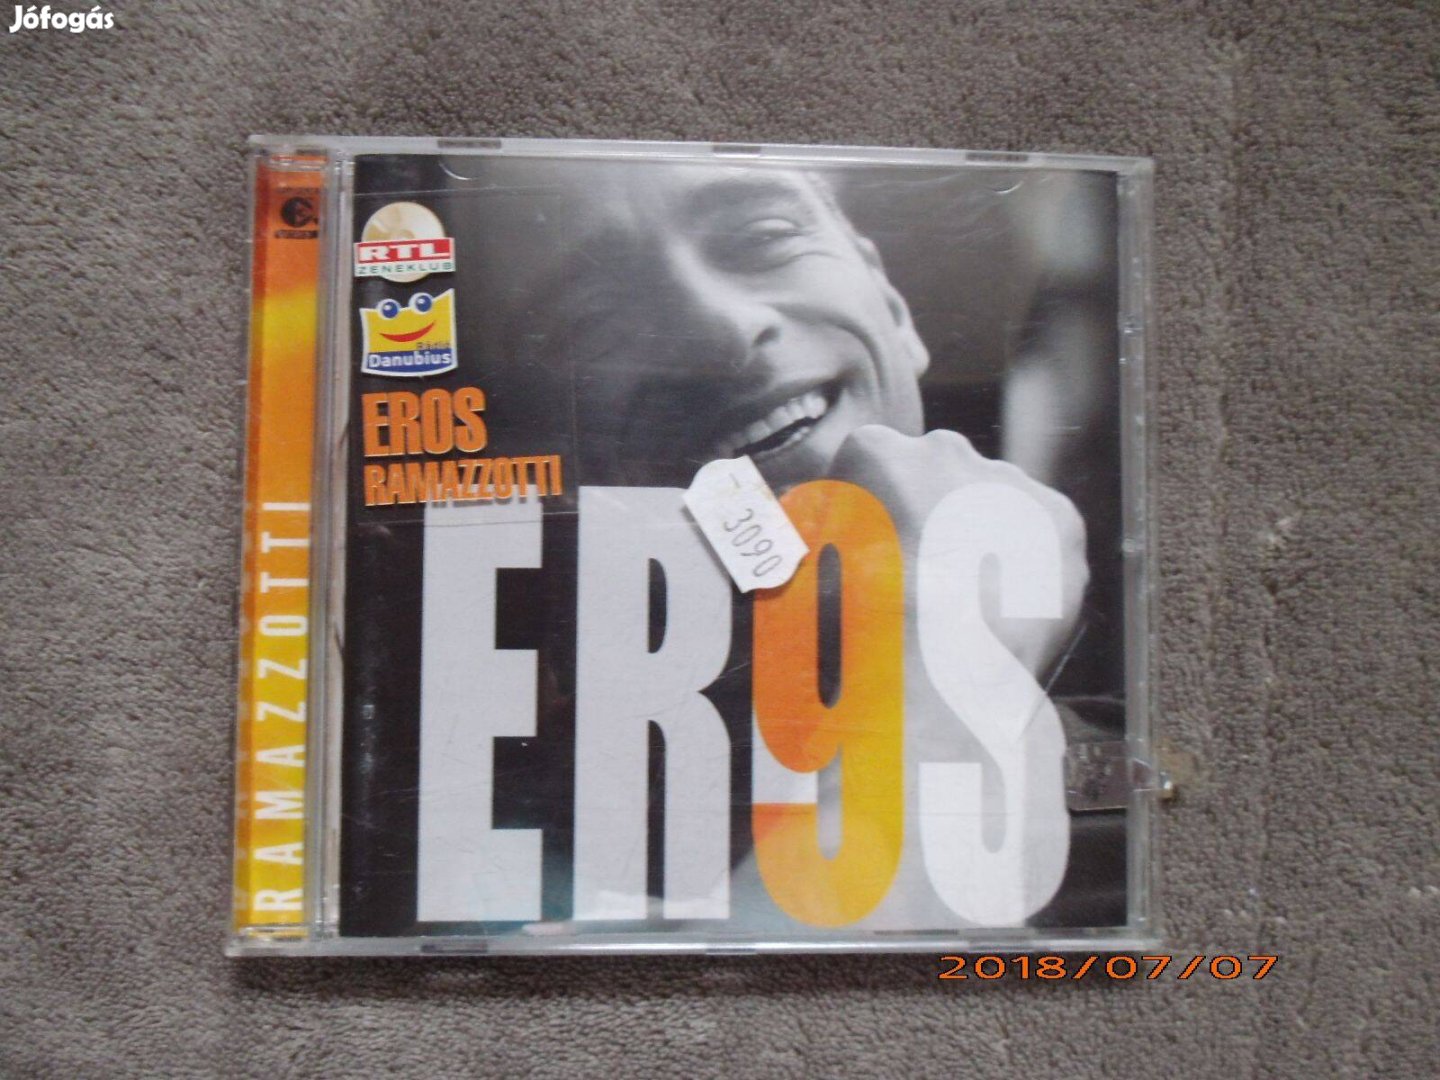 Eros Ramazzotti - 9 CD